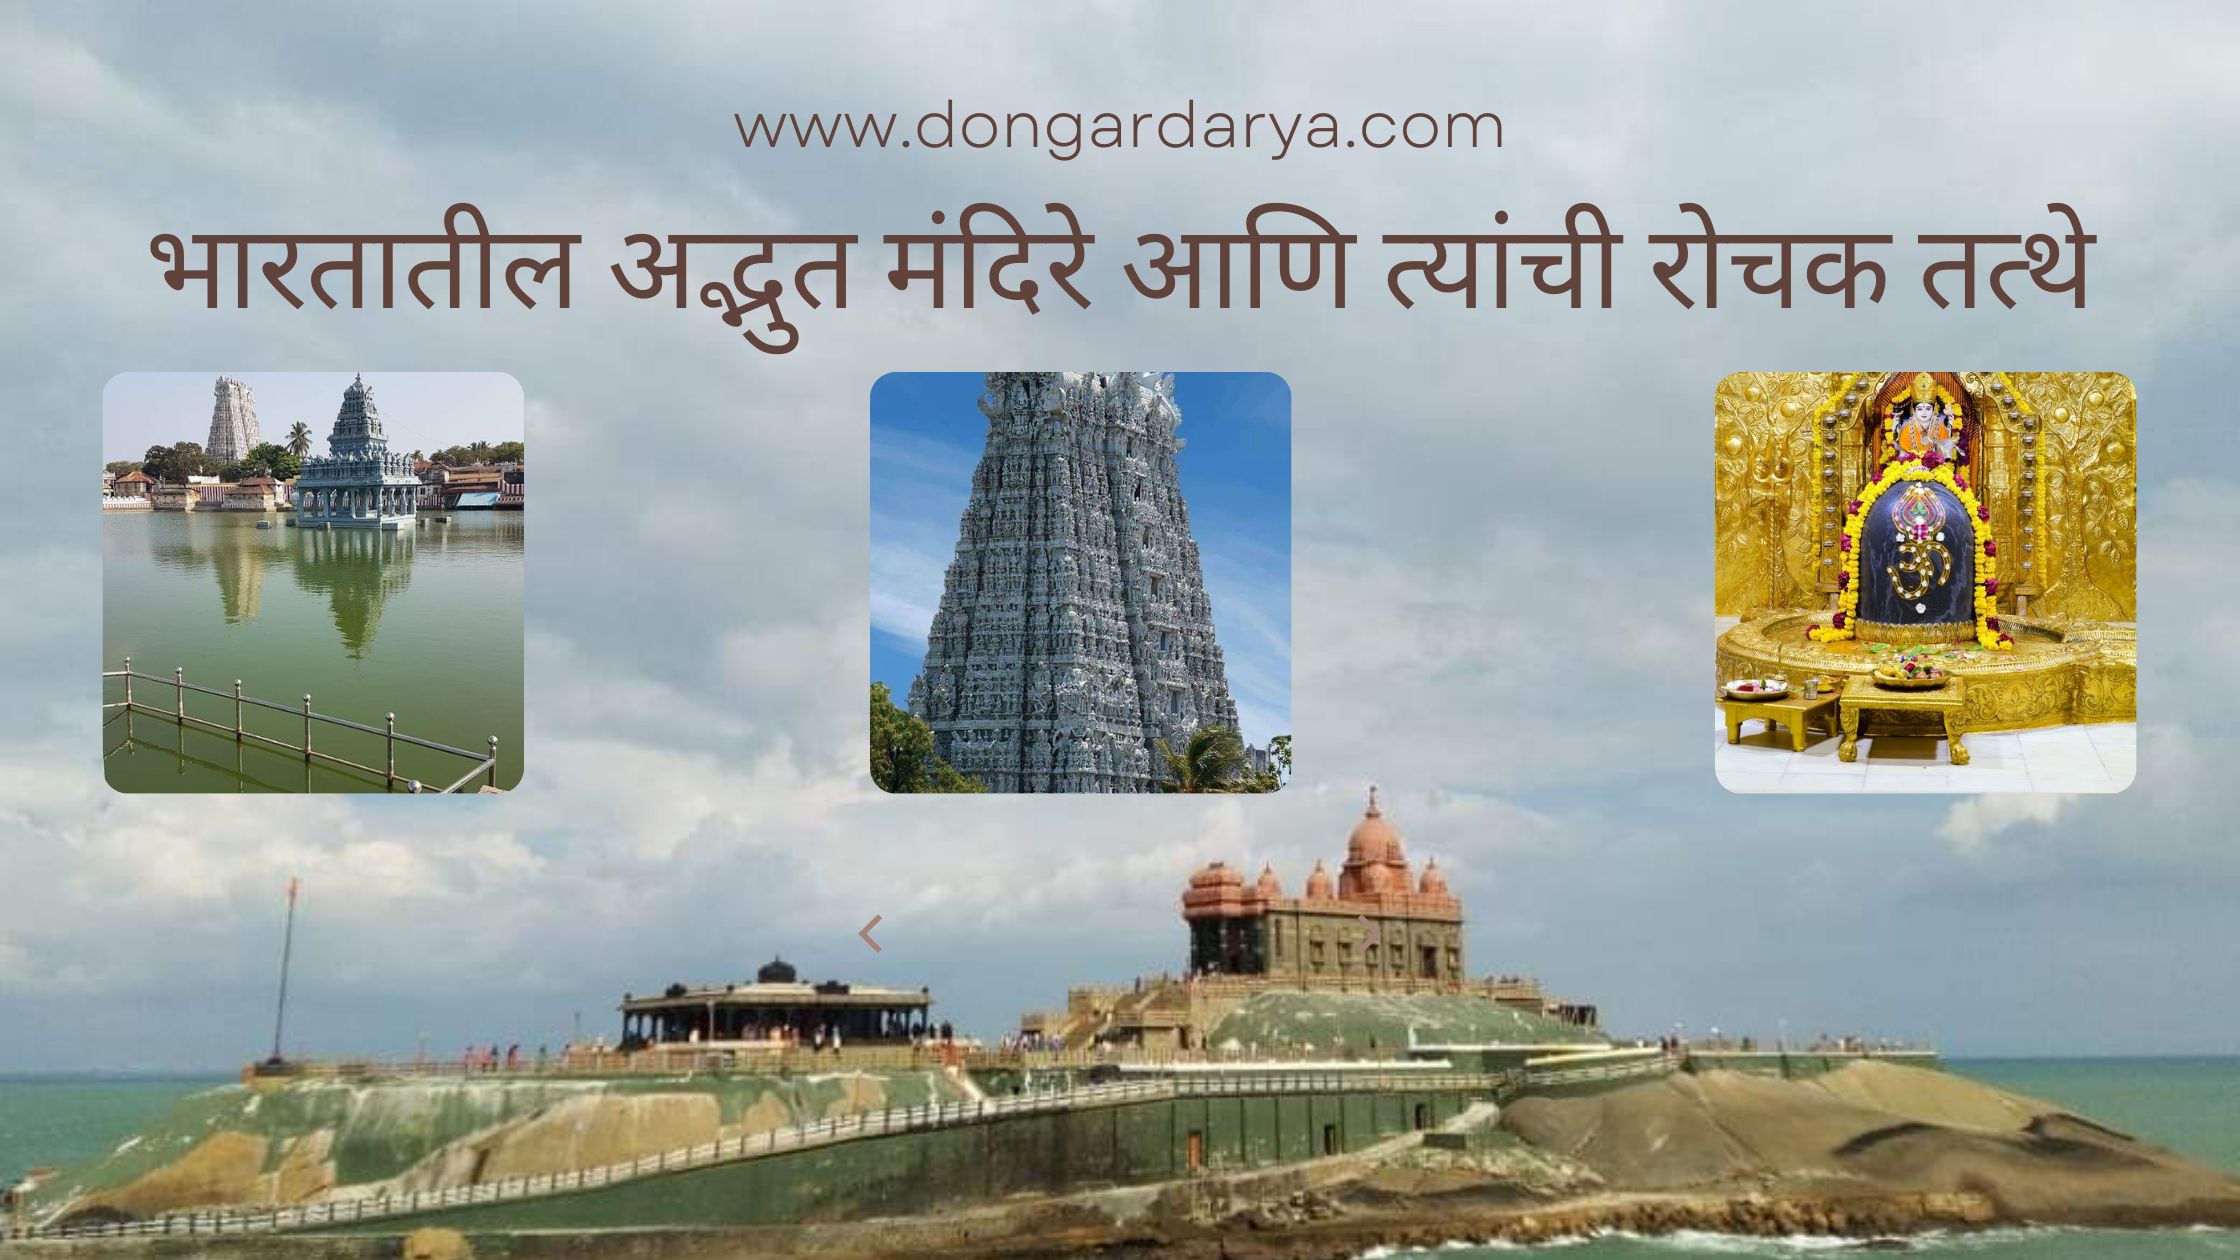 भारतातील अद्भुत मंदिरे आणि त्यांची रोचक तत्थे (10 Amazing Temples in India and their interesting facts)